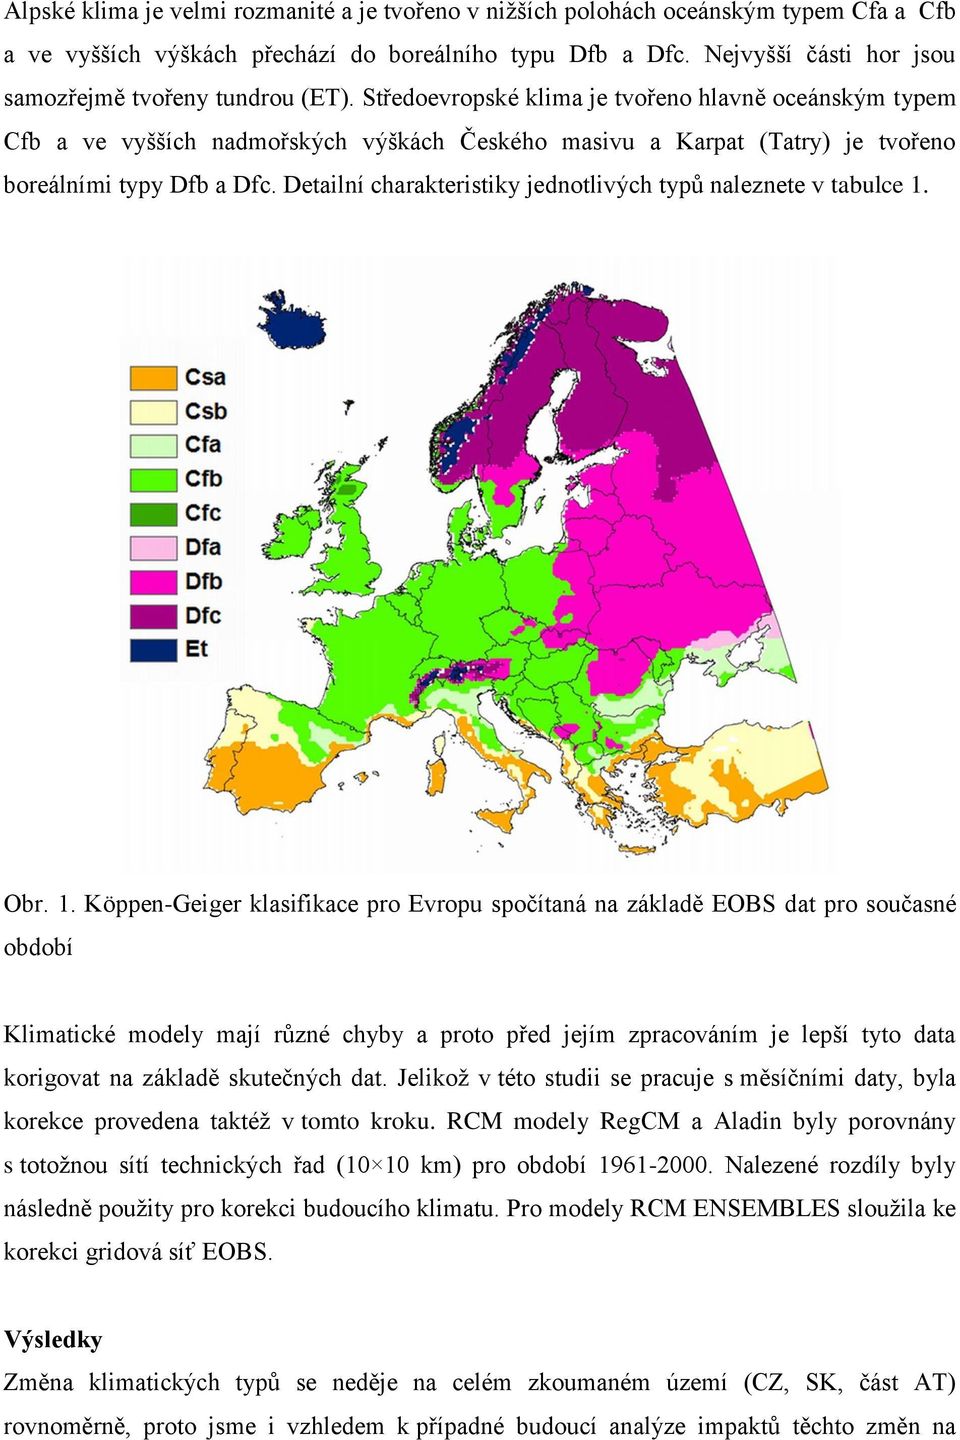 Středoevropské klima je tvořeno hlavně oceánským typem Cfb a ve vyšších nadmořských výškách Českého masivu a Karpat (Tatry) je tvořeno boreálními typy Dfb a Dfc.